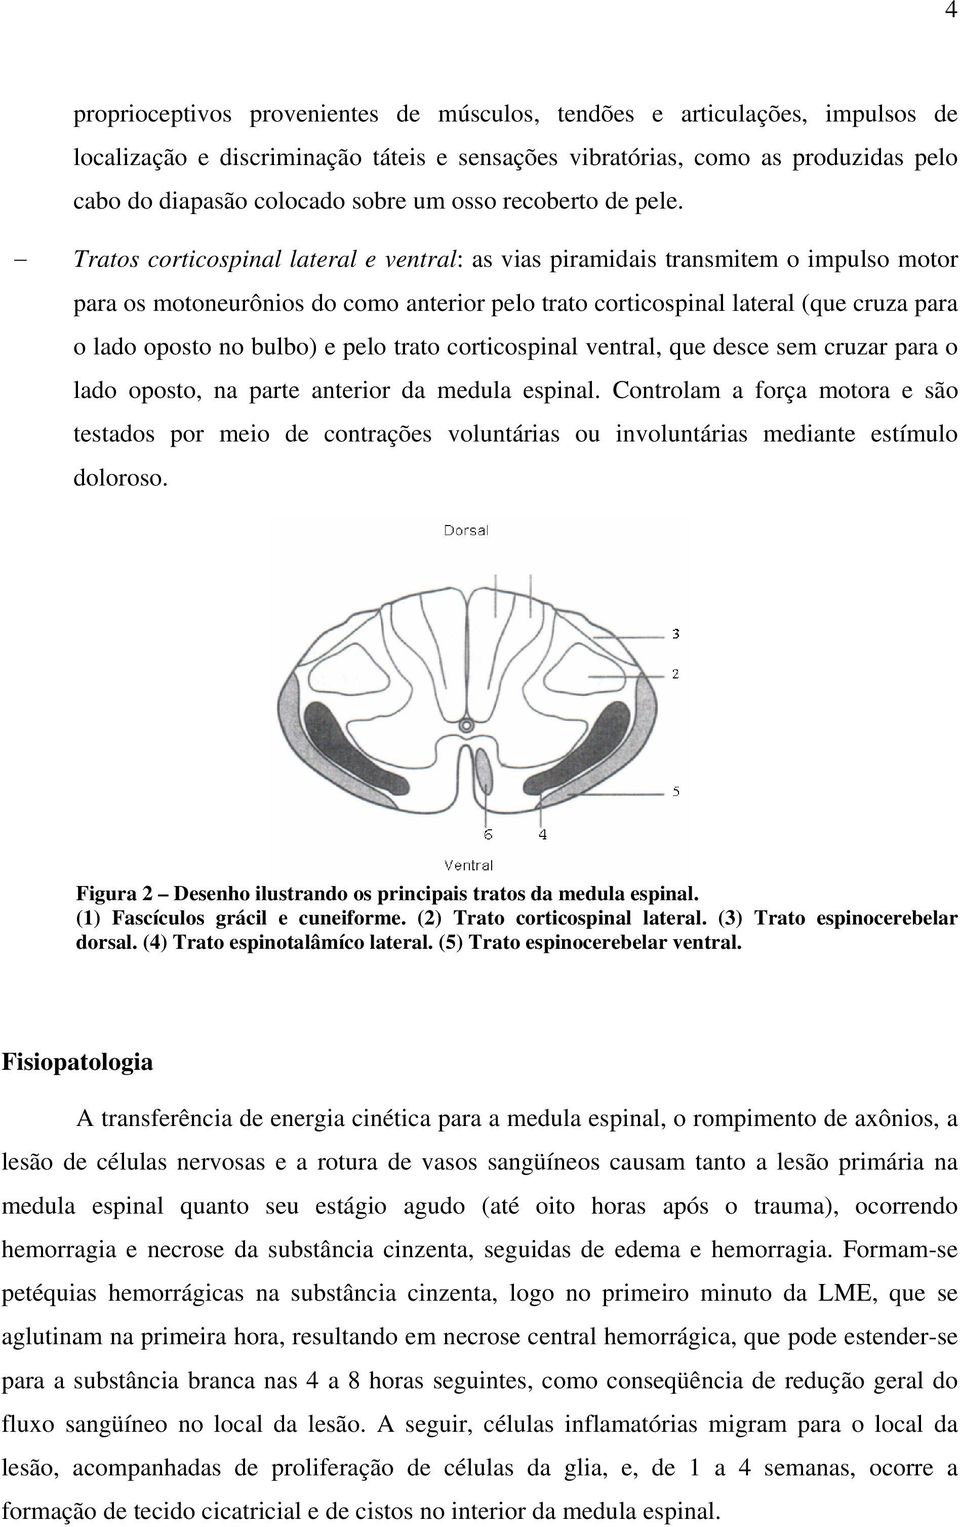 Tratos corticospinal lateral e ventral: as vias piramidais transmitem o impulso motor para os motoneurônios do como anterior pelo trato corticospinal lateral (que cruza para o lado oposto no bulbo) e